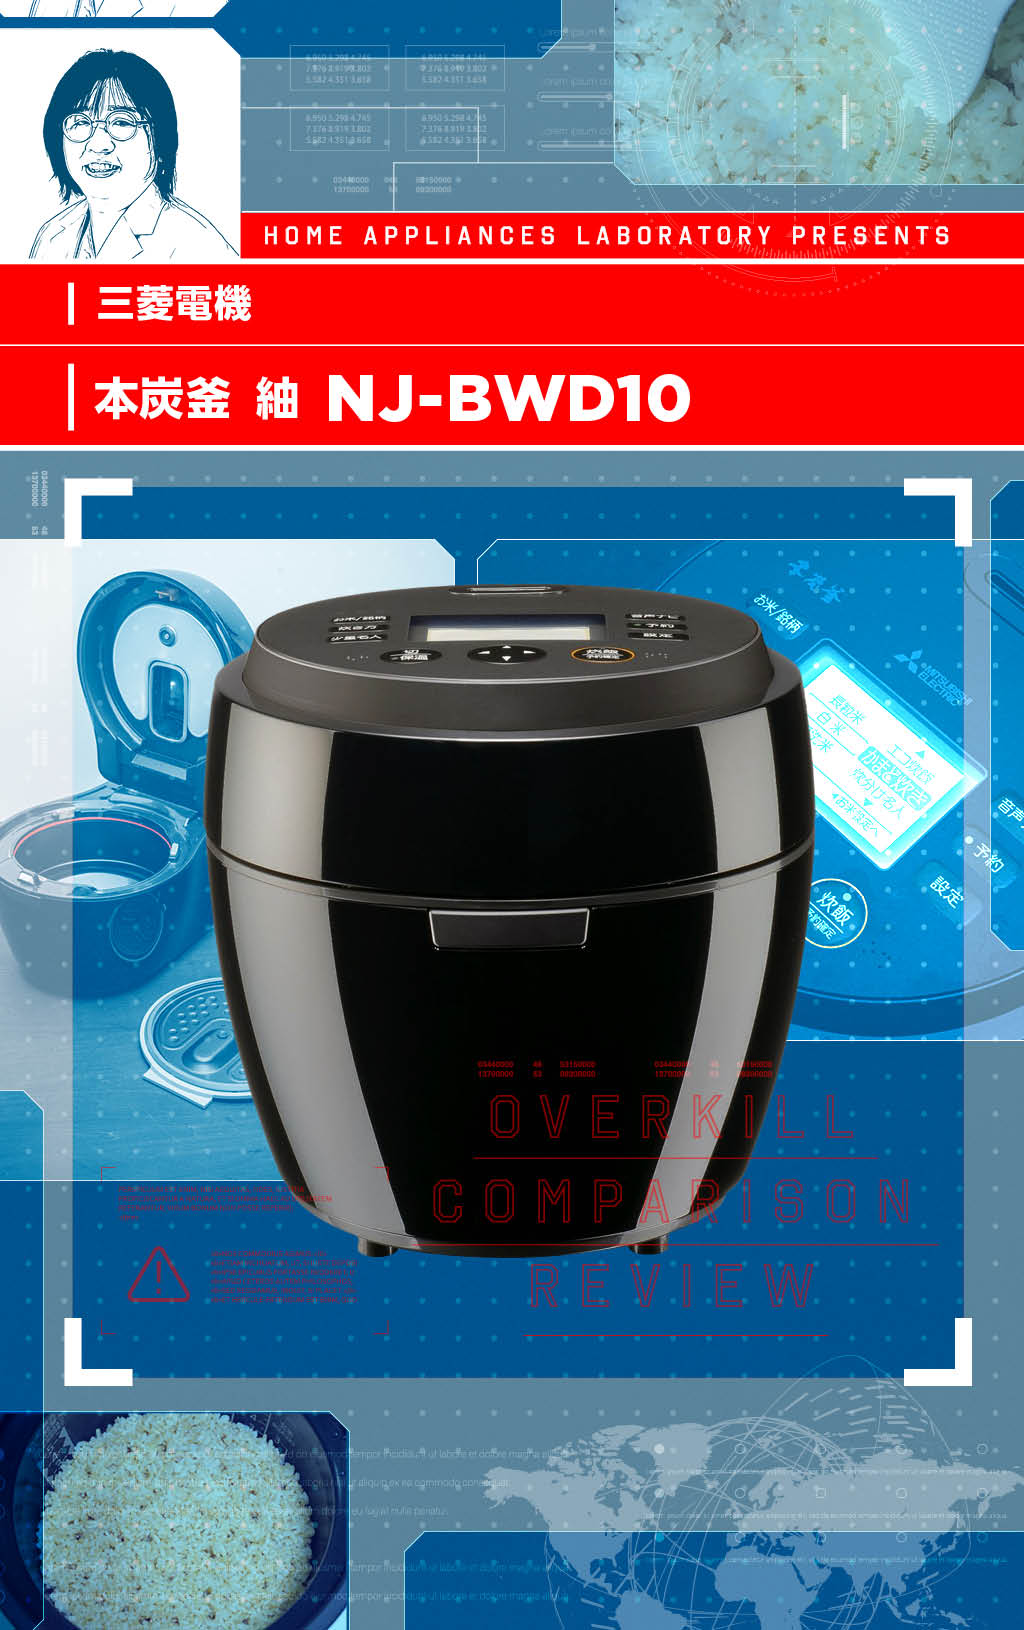 三菱電機 本炭釜 紬 NJ-BWD10 使用少なめ - 炊飯器